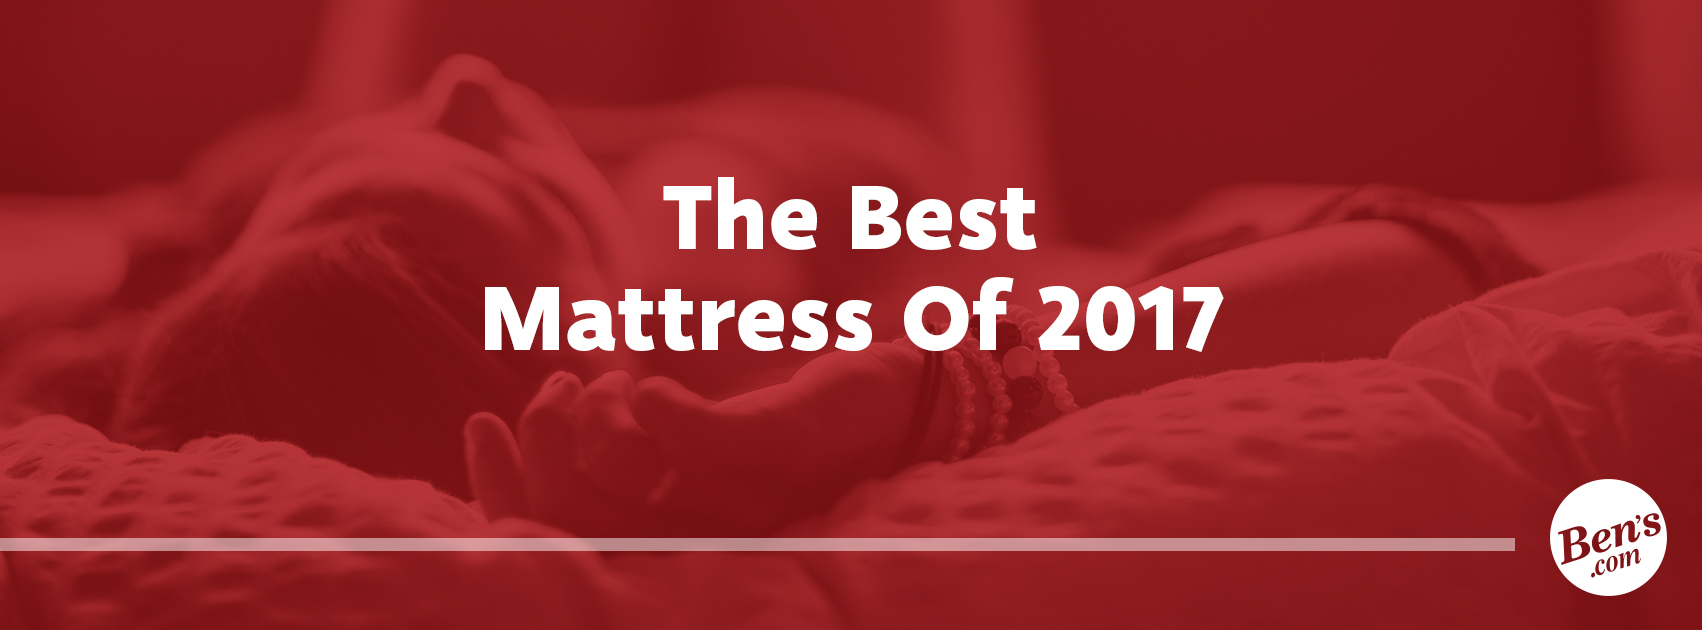 The Best Mattress of 2017